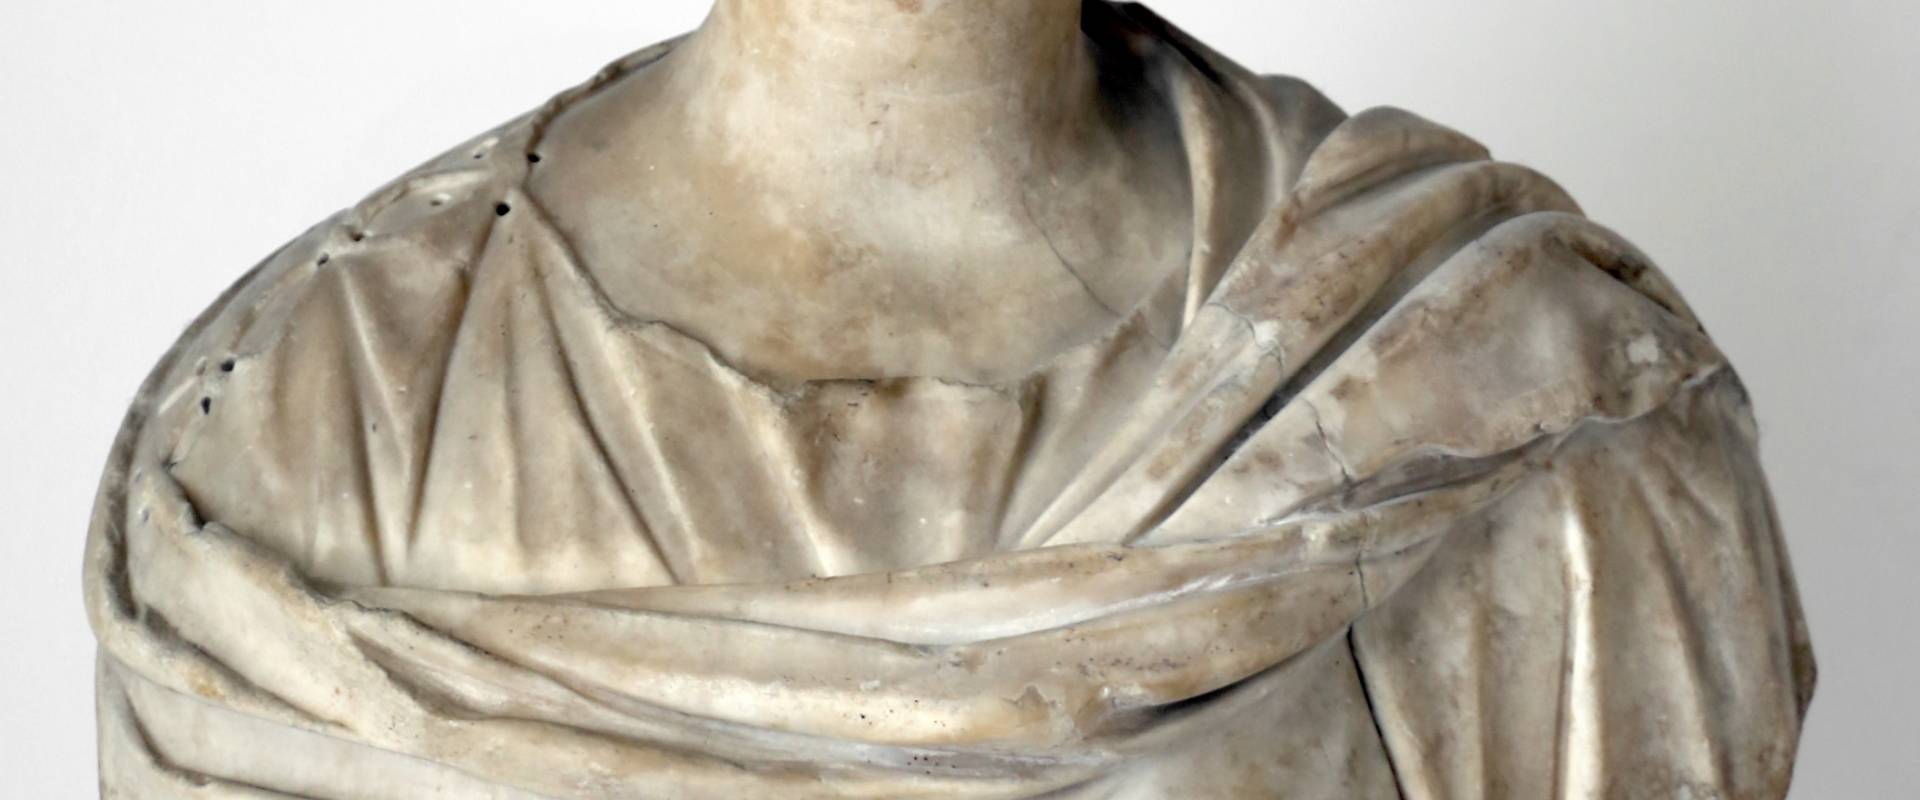 Busto femminile, 190 dc ca, con busto di restauro 01 photo by Sailko